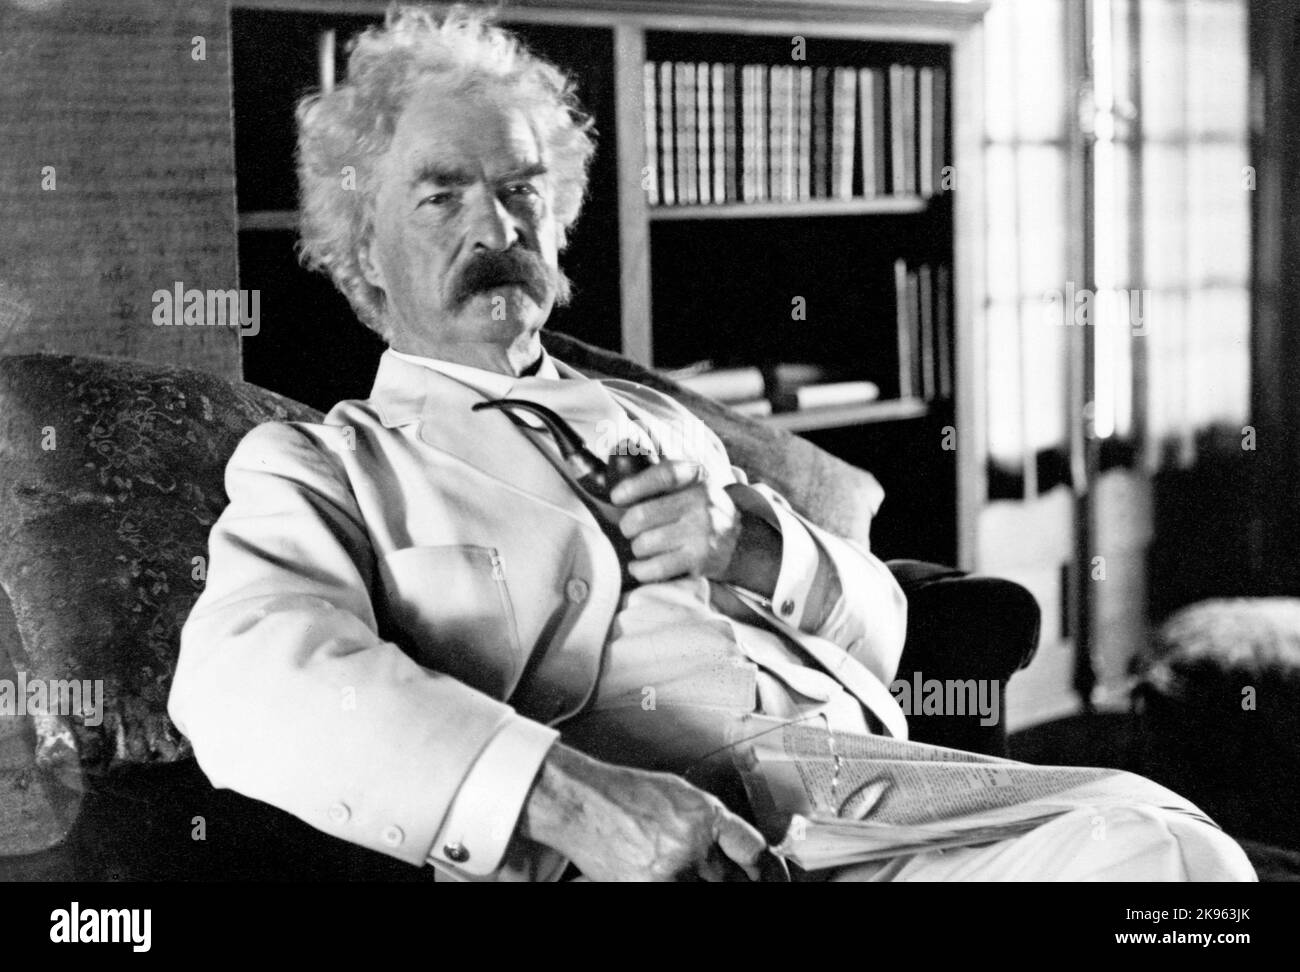 Mark Twain (Samuel L. Clemens) Retrato de tres cuartos de longitud, sentado, mirando ligeramente a la derecha, sosteniendo la pipa Foto de stock